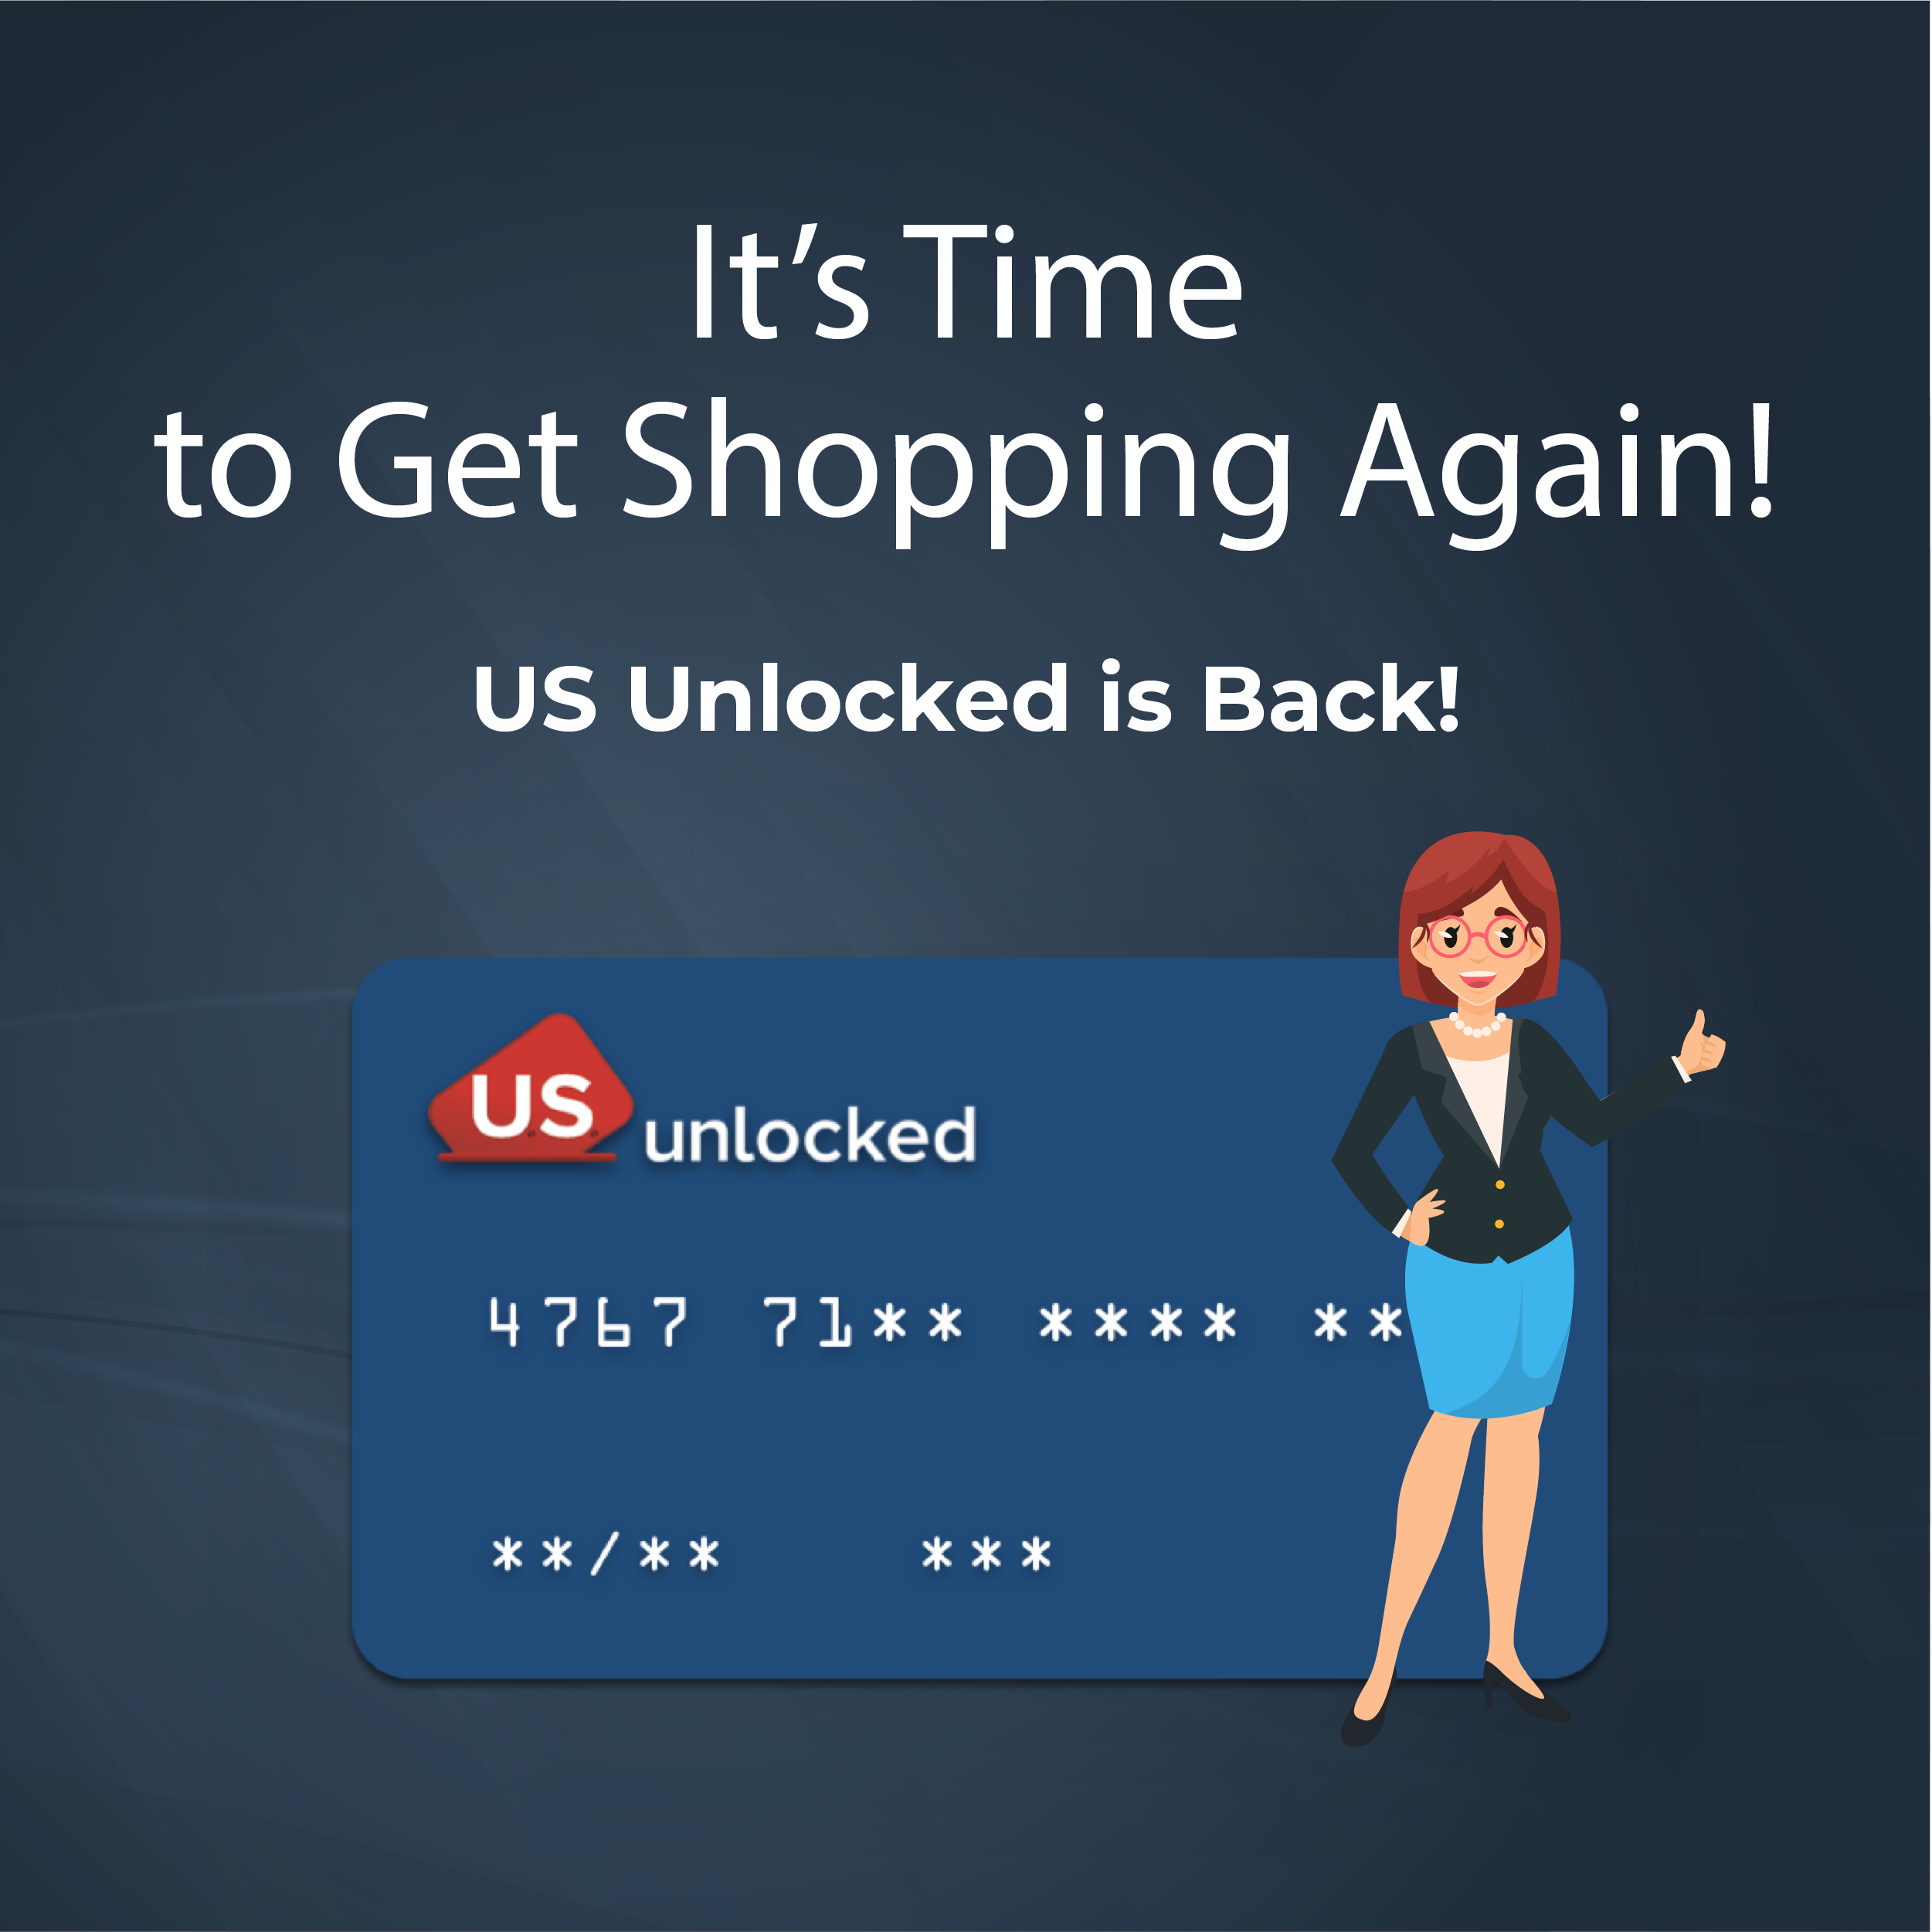 US Unlocked is Back